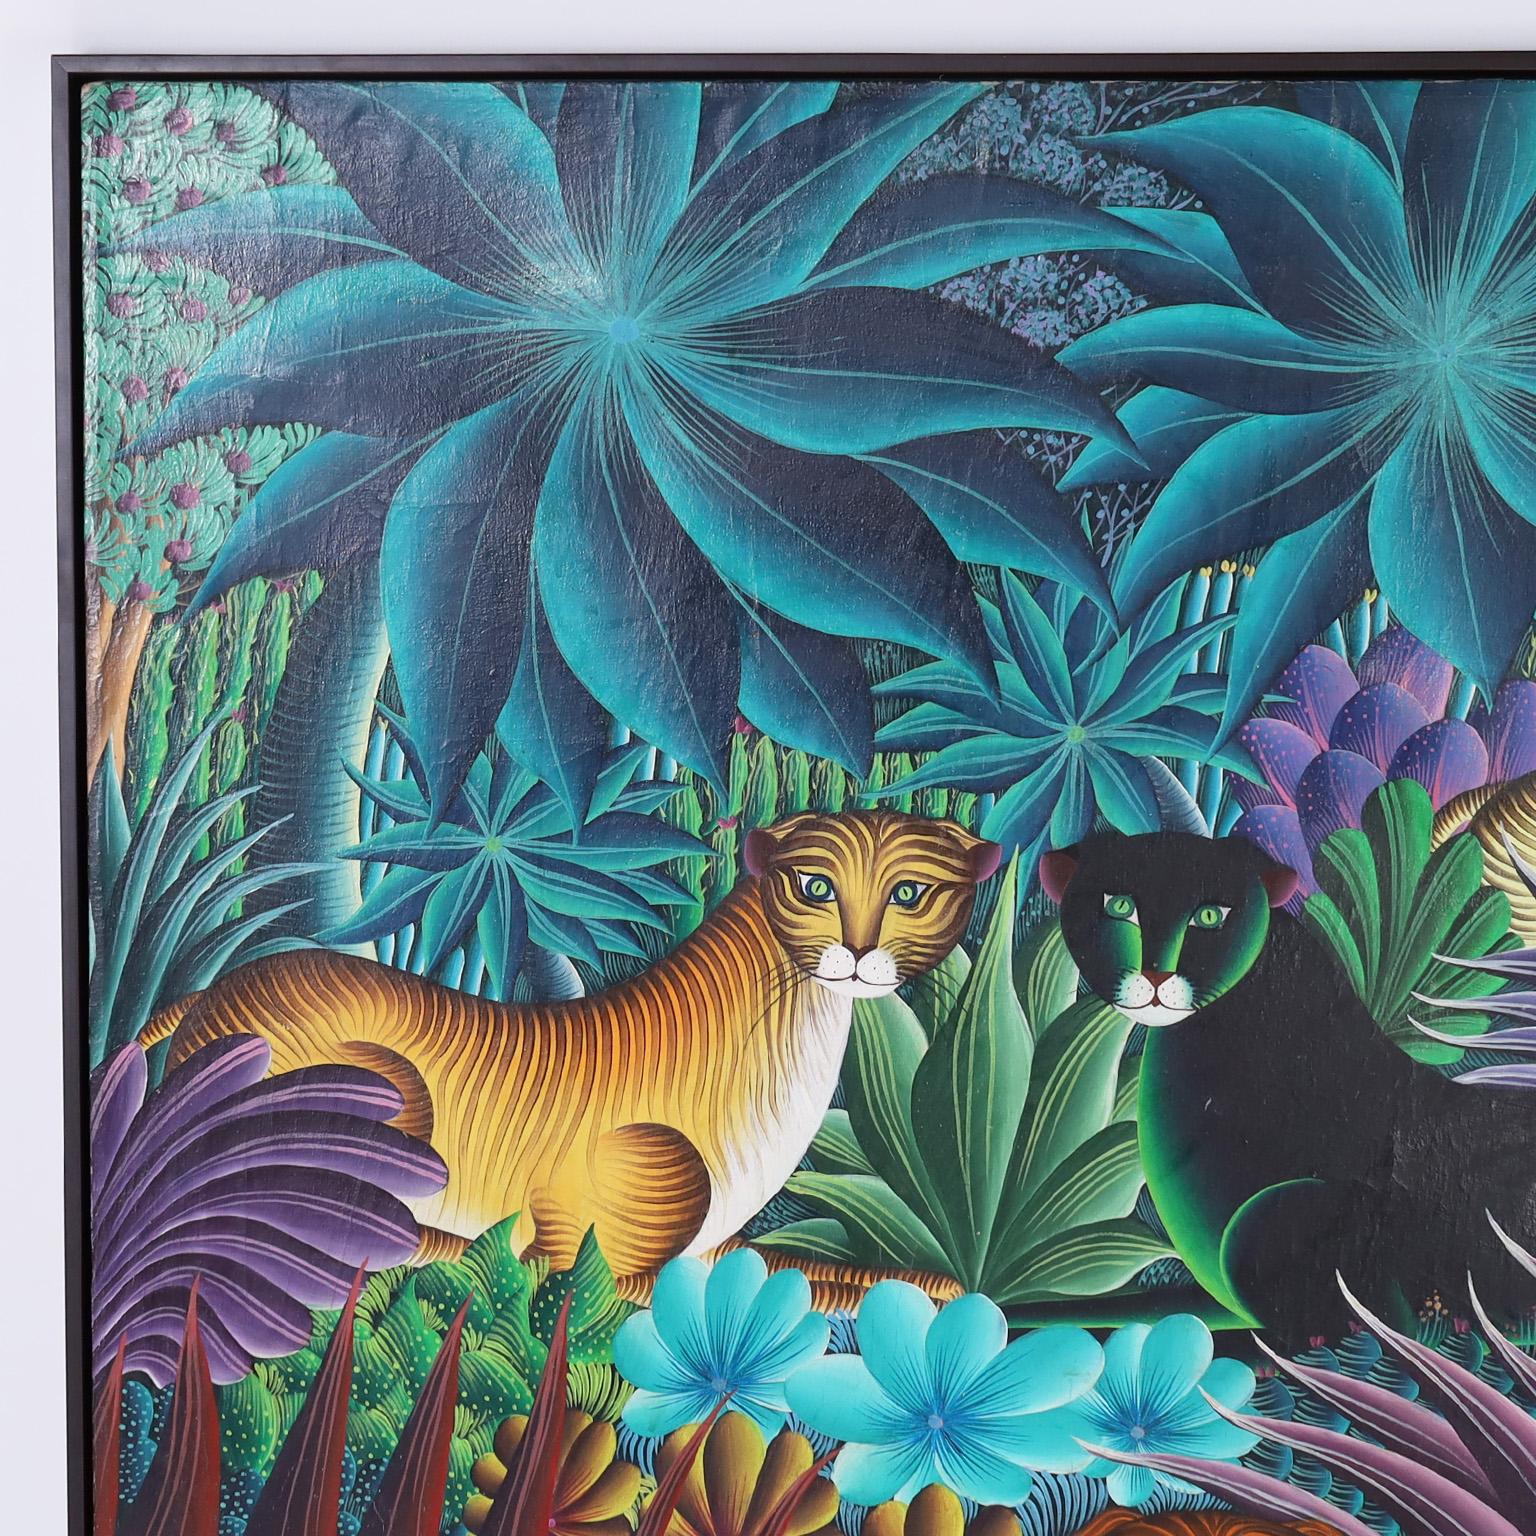 Peinture acrylique haïtienne sur toile représentant des grands félins stylisés dans un décor de jungle luxuriante avec des arbres fruitiers, des palmiers et une flore tropicale variée. Signé par le célèbre artiste M. Paul et présenté dans un cadre